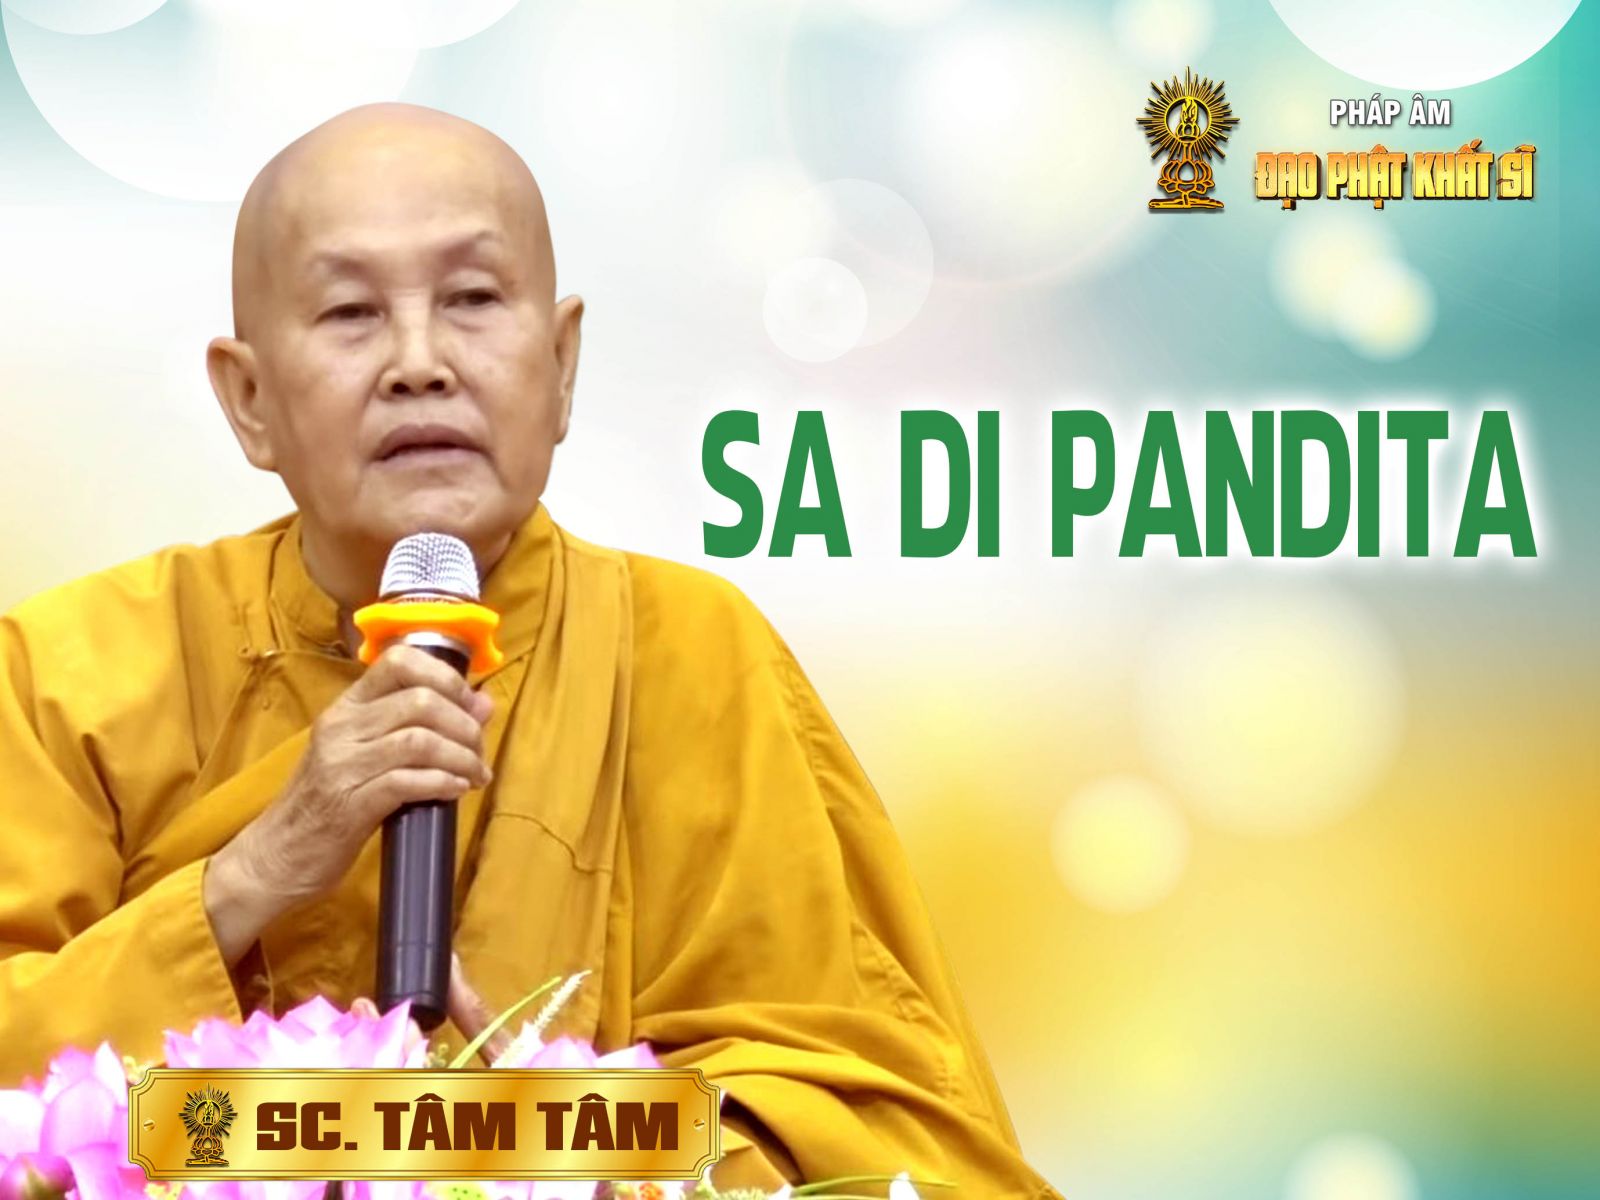 Sadi Pandita tín tâm với Đức Phật